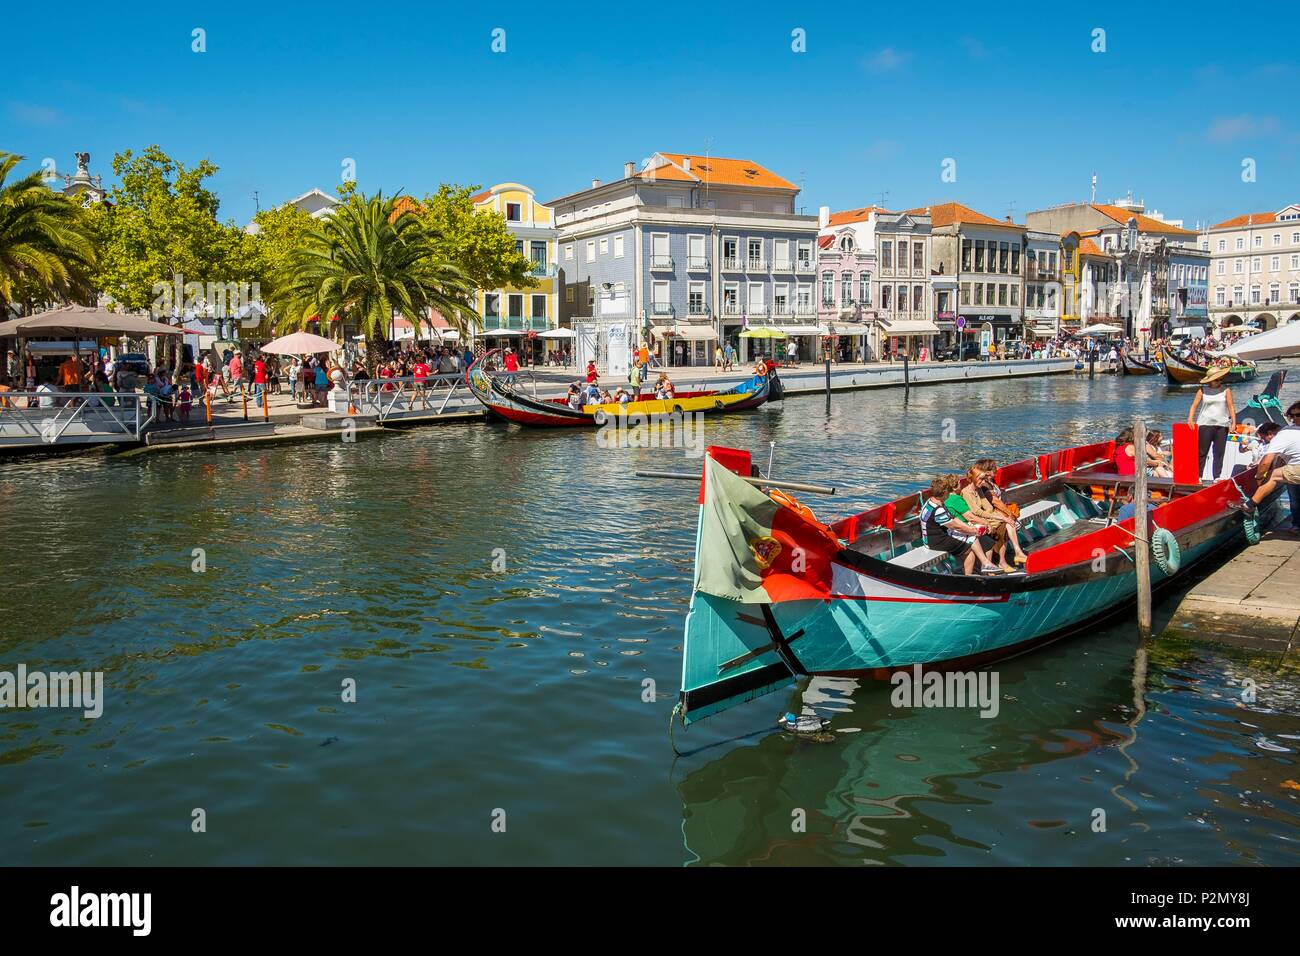 Portugal, région Centre, Aveiro, la petite Venise du Portugal les moliceiros, embarcations traditionnelles propres à la région qui ont été utilisés pour récolter l'algue Banque D'Images